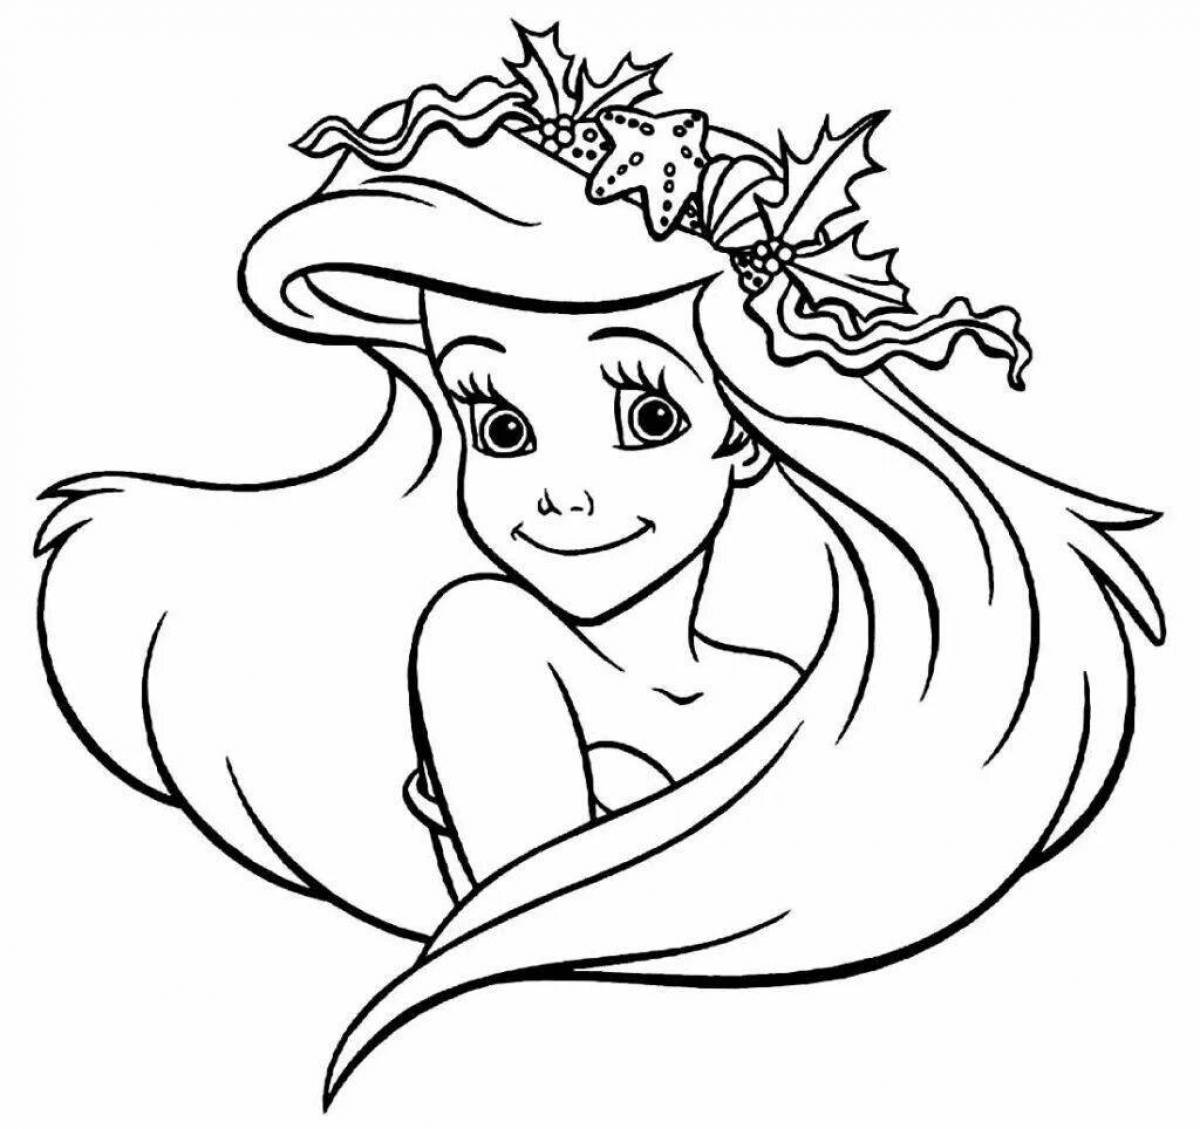 Elegant little mermaid coloring book